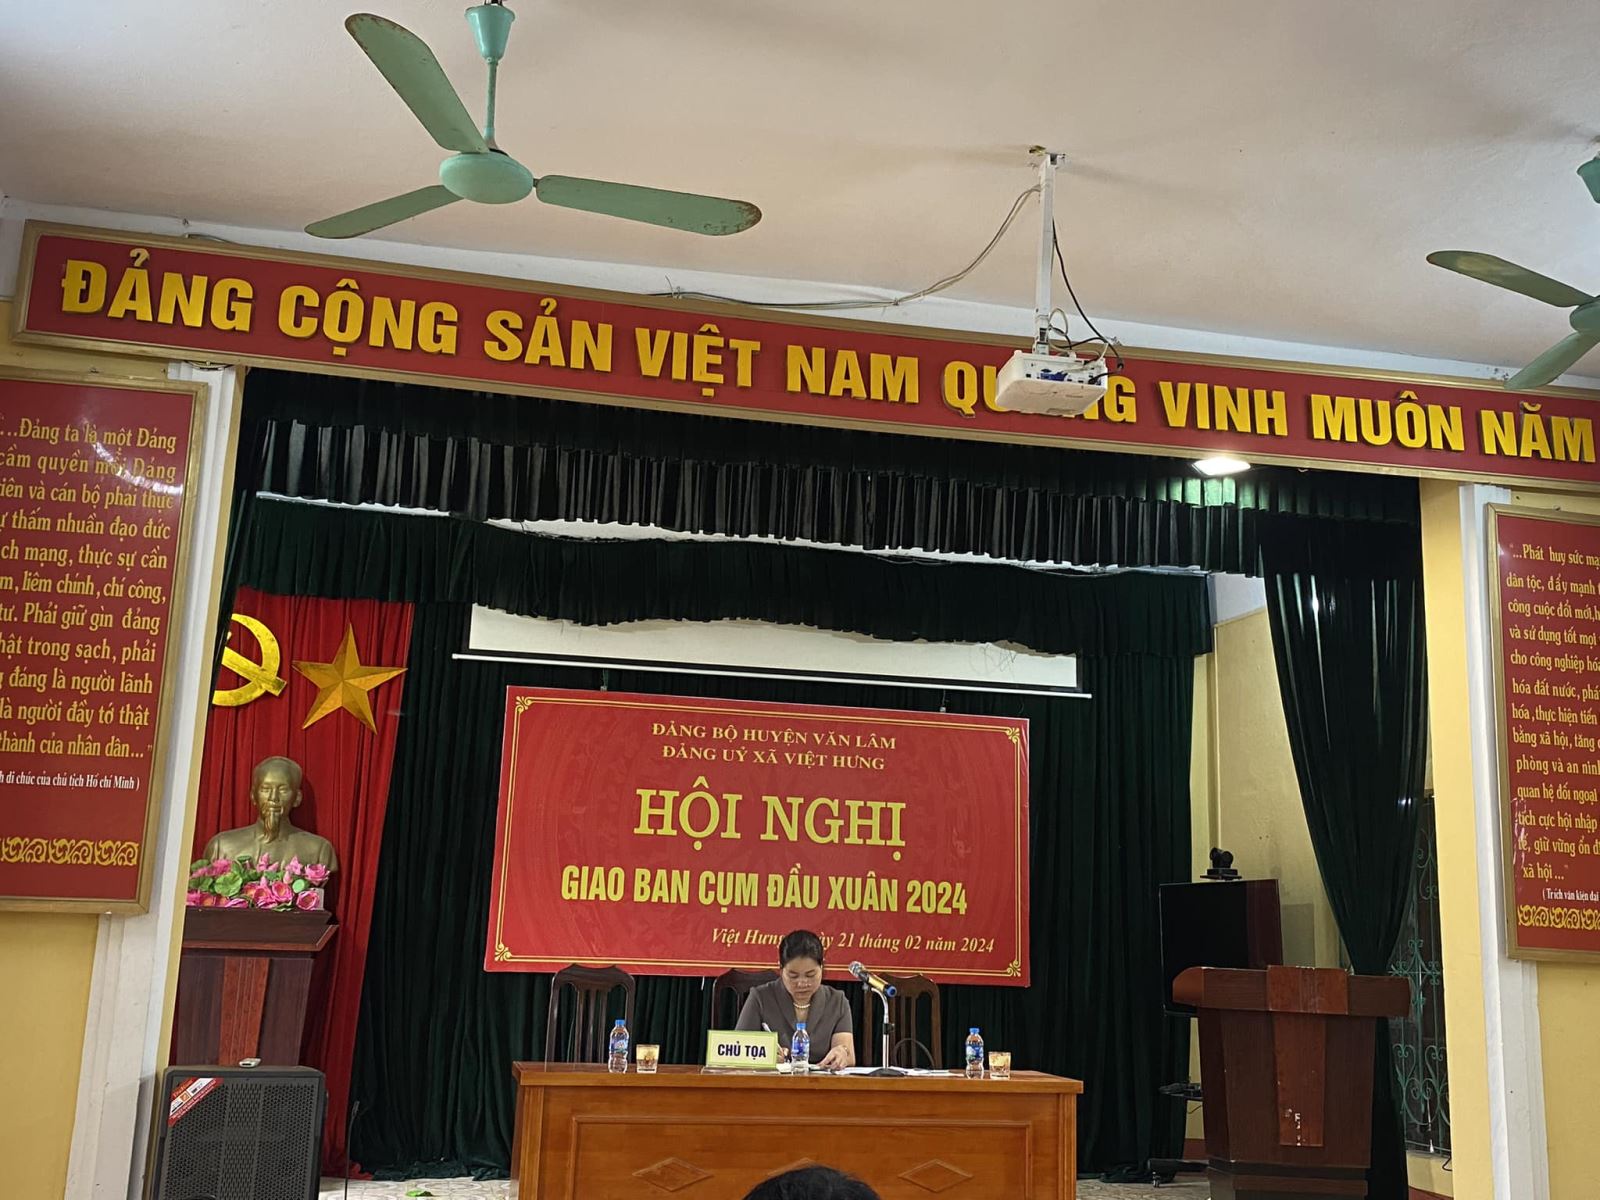 Đảng bộ xã Việt Hưng tổ chức Hội nghị giao ban cụm đầu xuân năm 2024 giữa 2 xã Lương Tài và Việt Hưng.